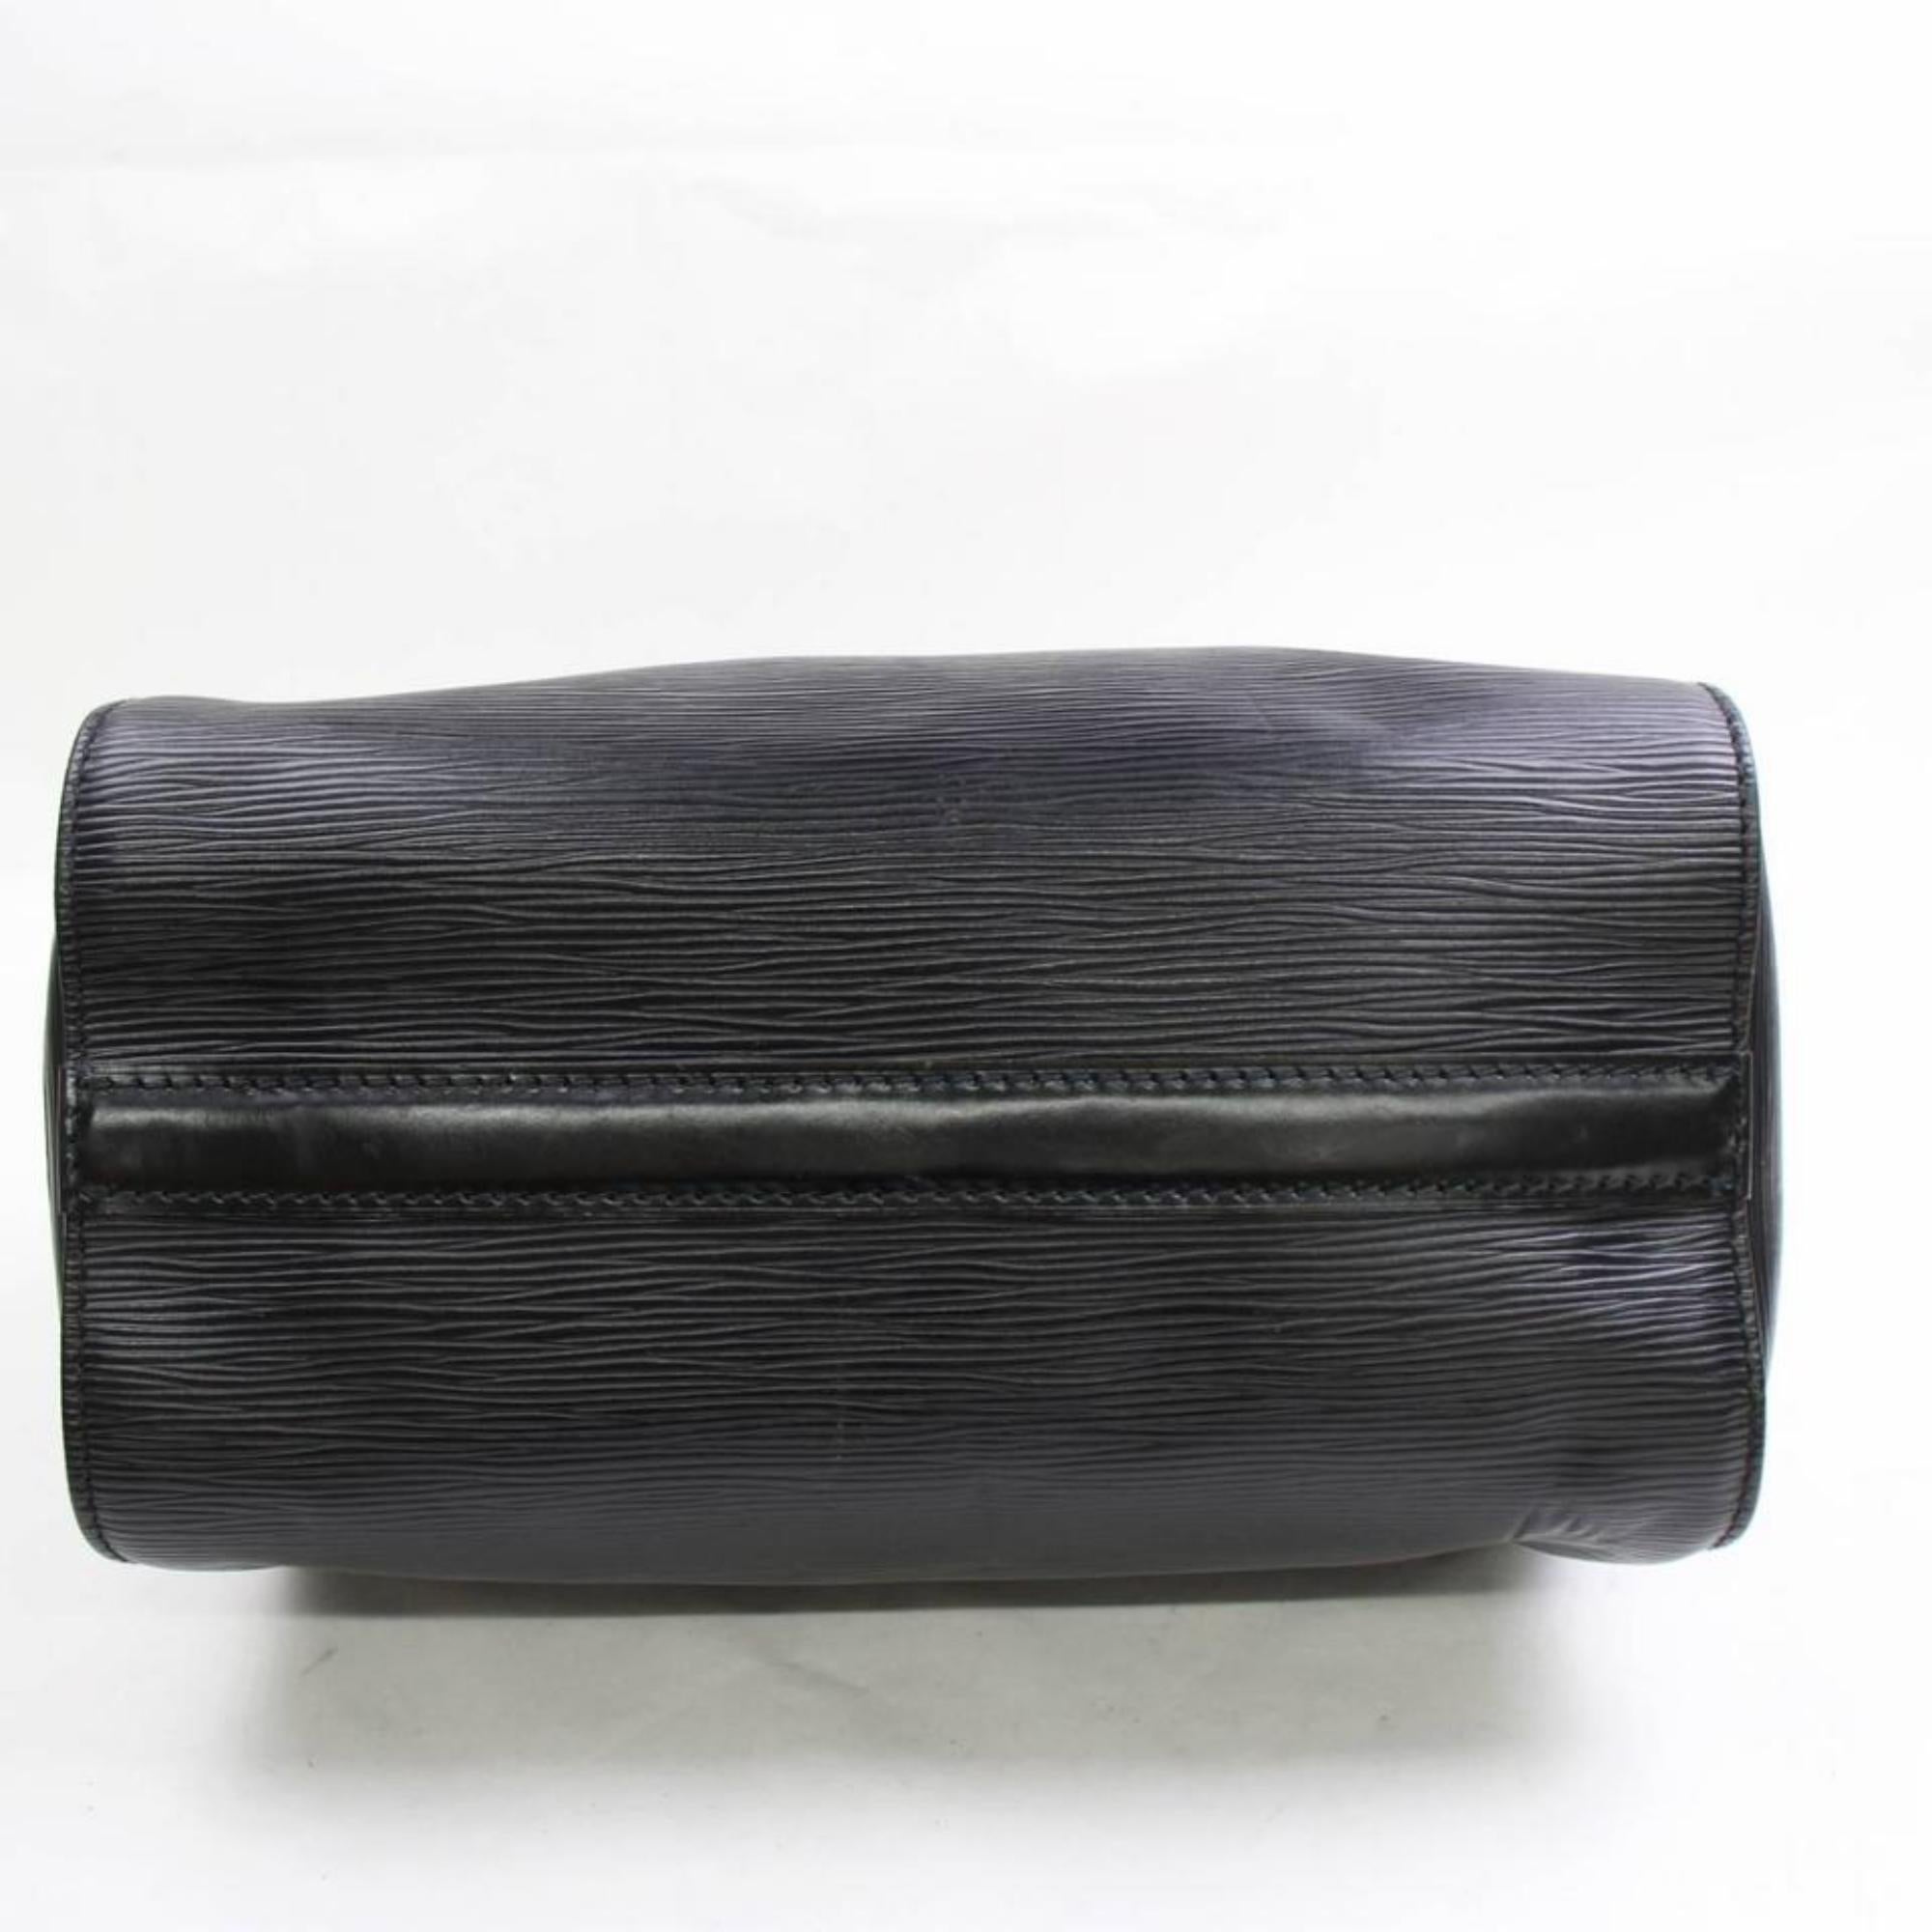 Louis Vuitton Speedy Noir 25 868360 Black Leather Satchel For Sale 3